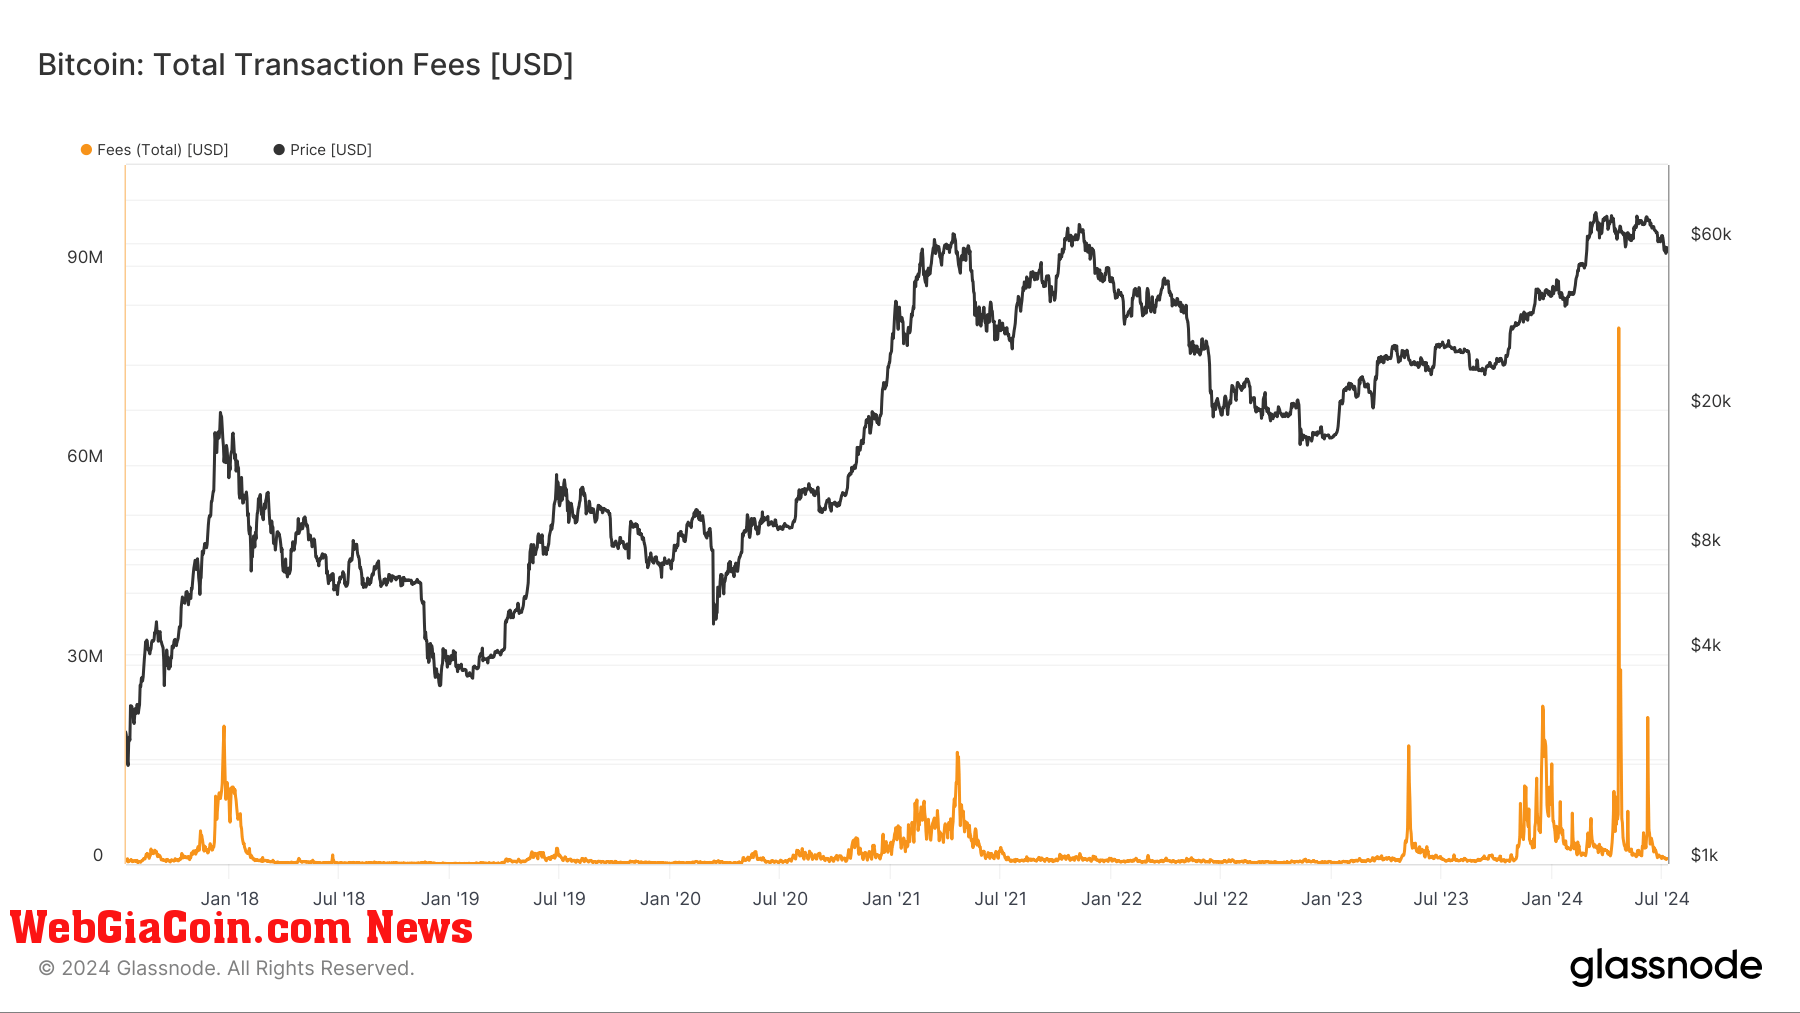 Phí giao dịch bitcoin vào tháng 4 năm 2024 phản ánh quá trình tăng giá nhanh chóng trong các sự kiện thị trường